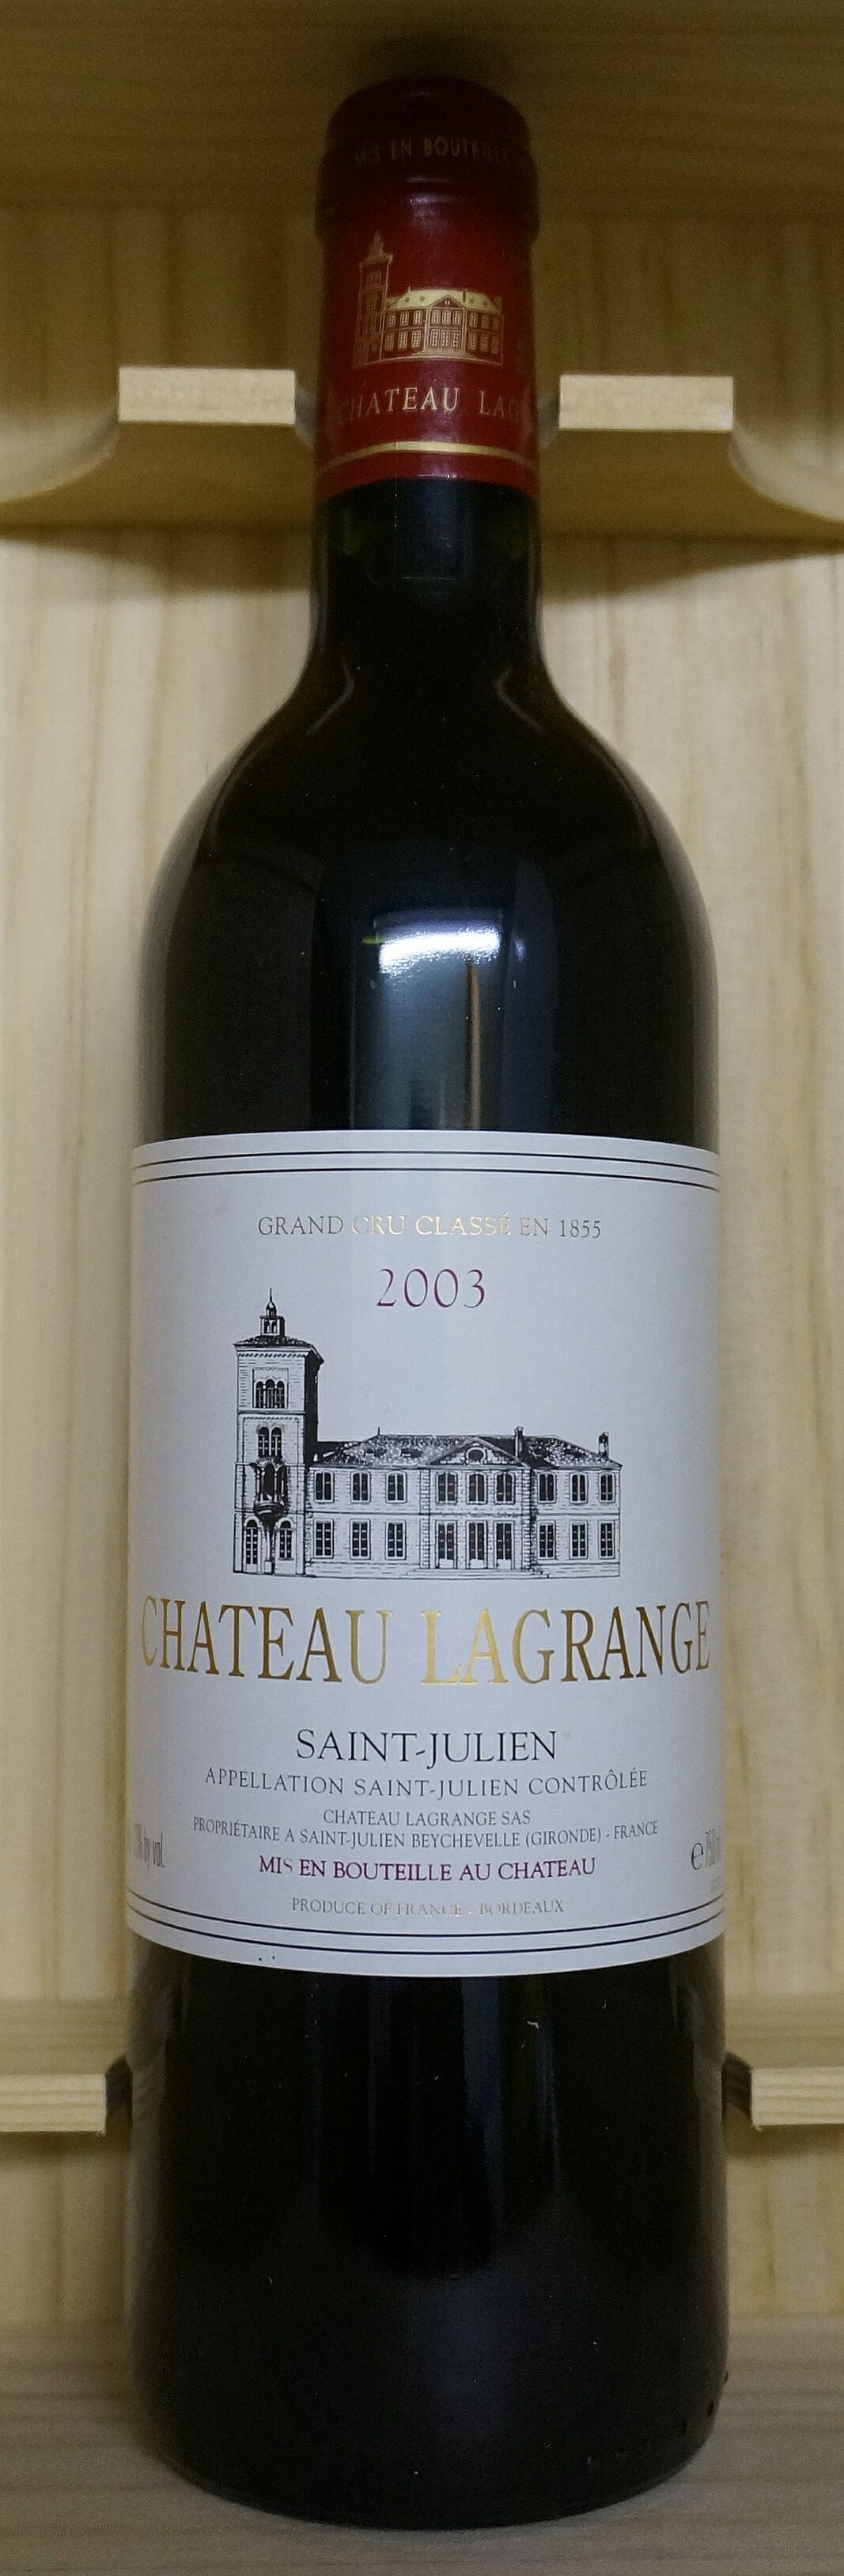 Chateau Lagrangelシャトー・ラグランジュ[2003]750ml Ch. LagrangeSaint Julien